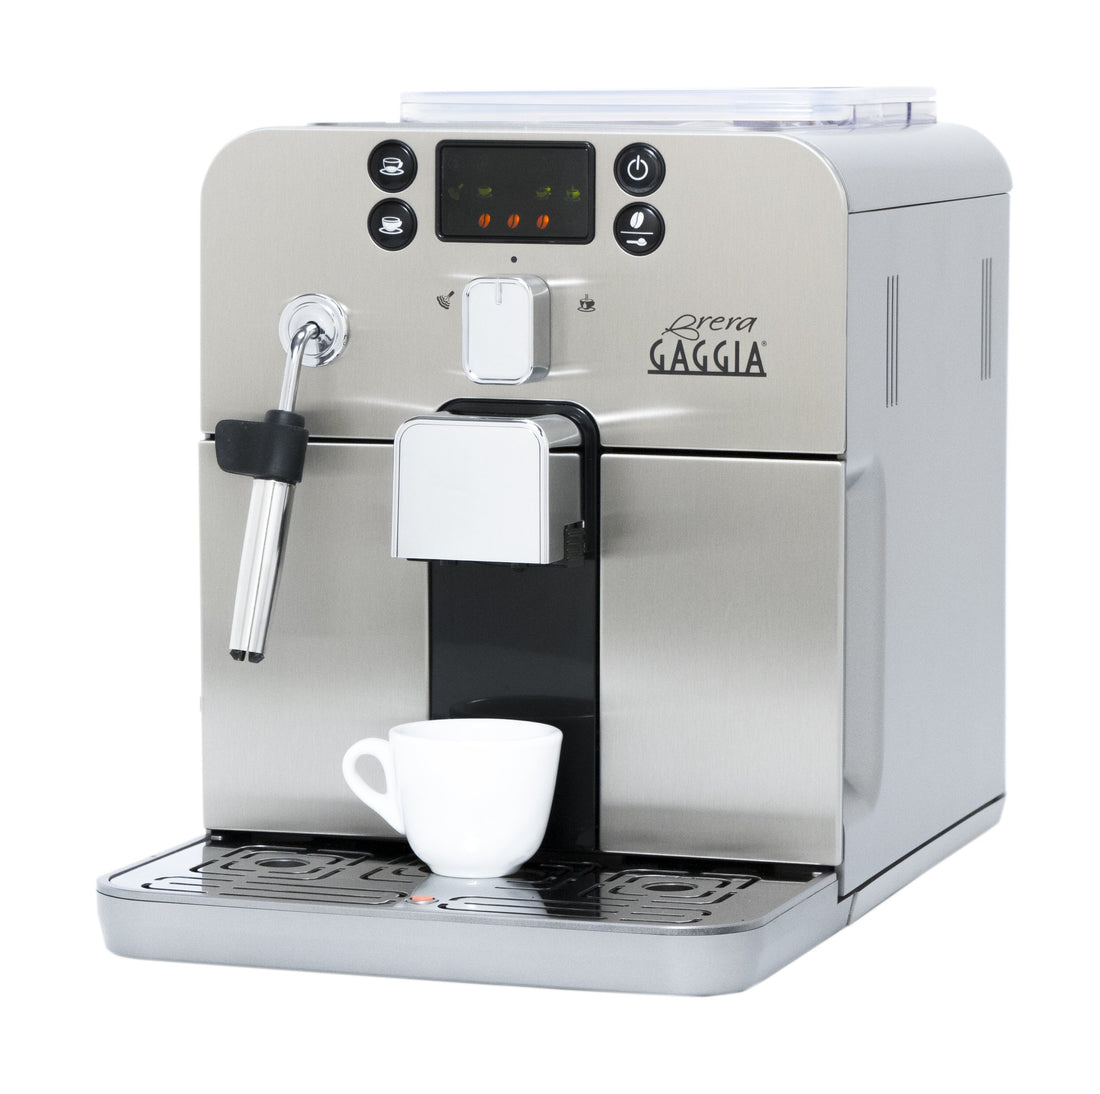 Refurbished Gaggia Brera Espresso Machine in Silver